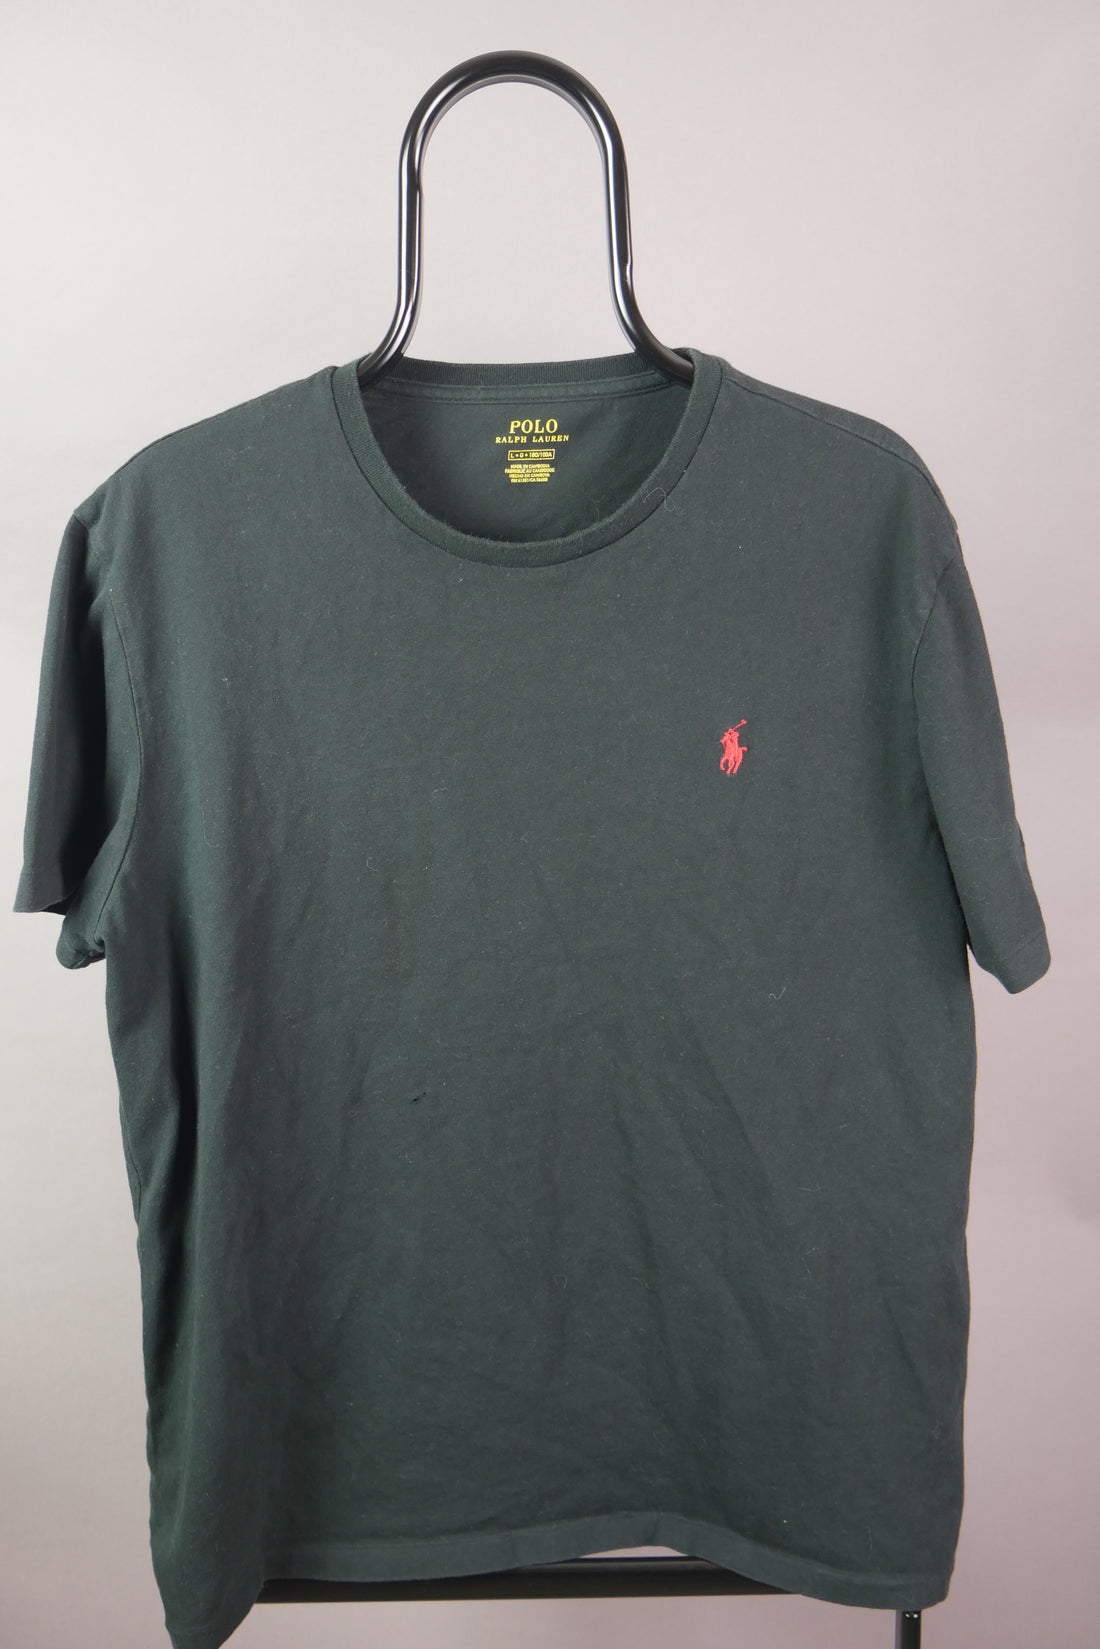 The Polo Ralph Lauren T-Shirt (L)